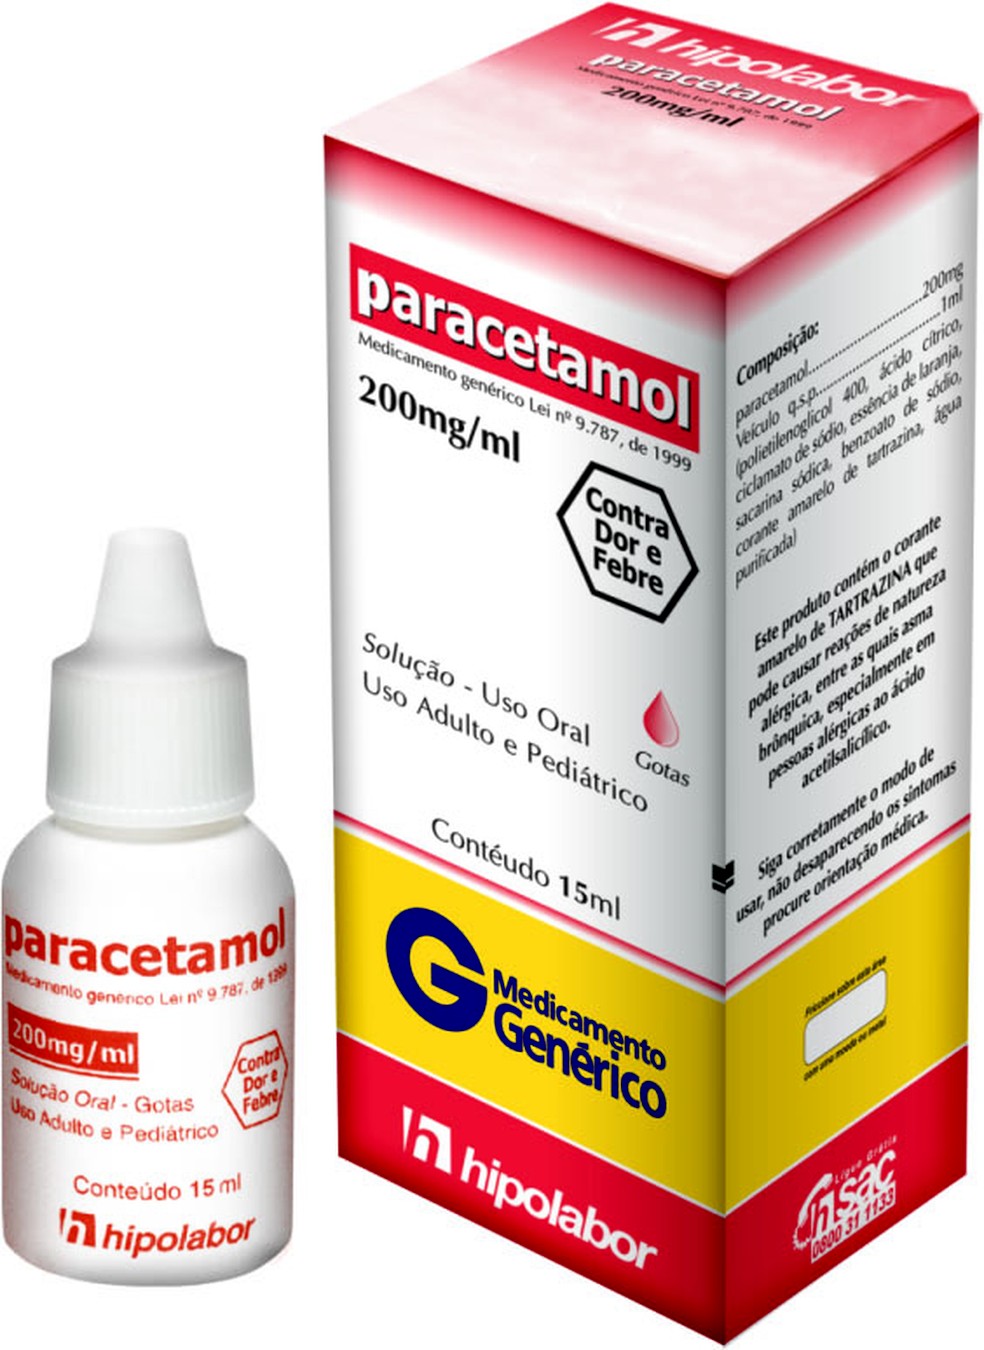 Lotes de paracetamol em gotas foram suspensos pela Anvisa (Foto: Divulgação)